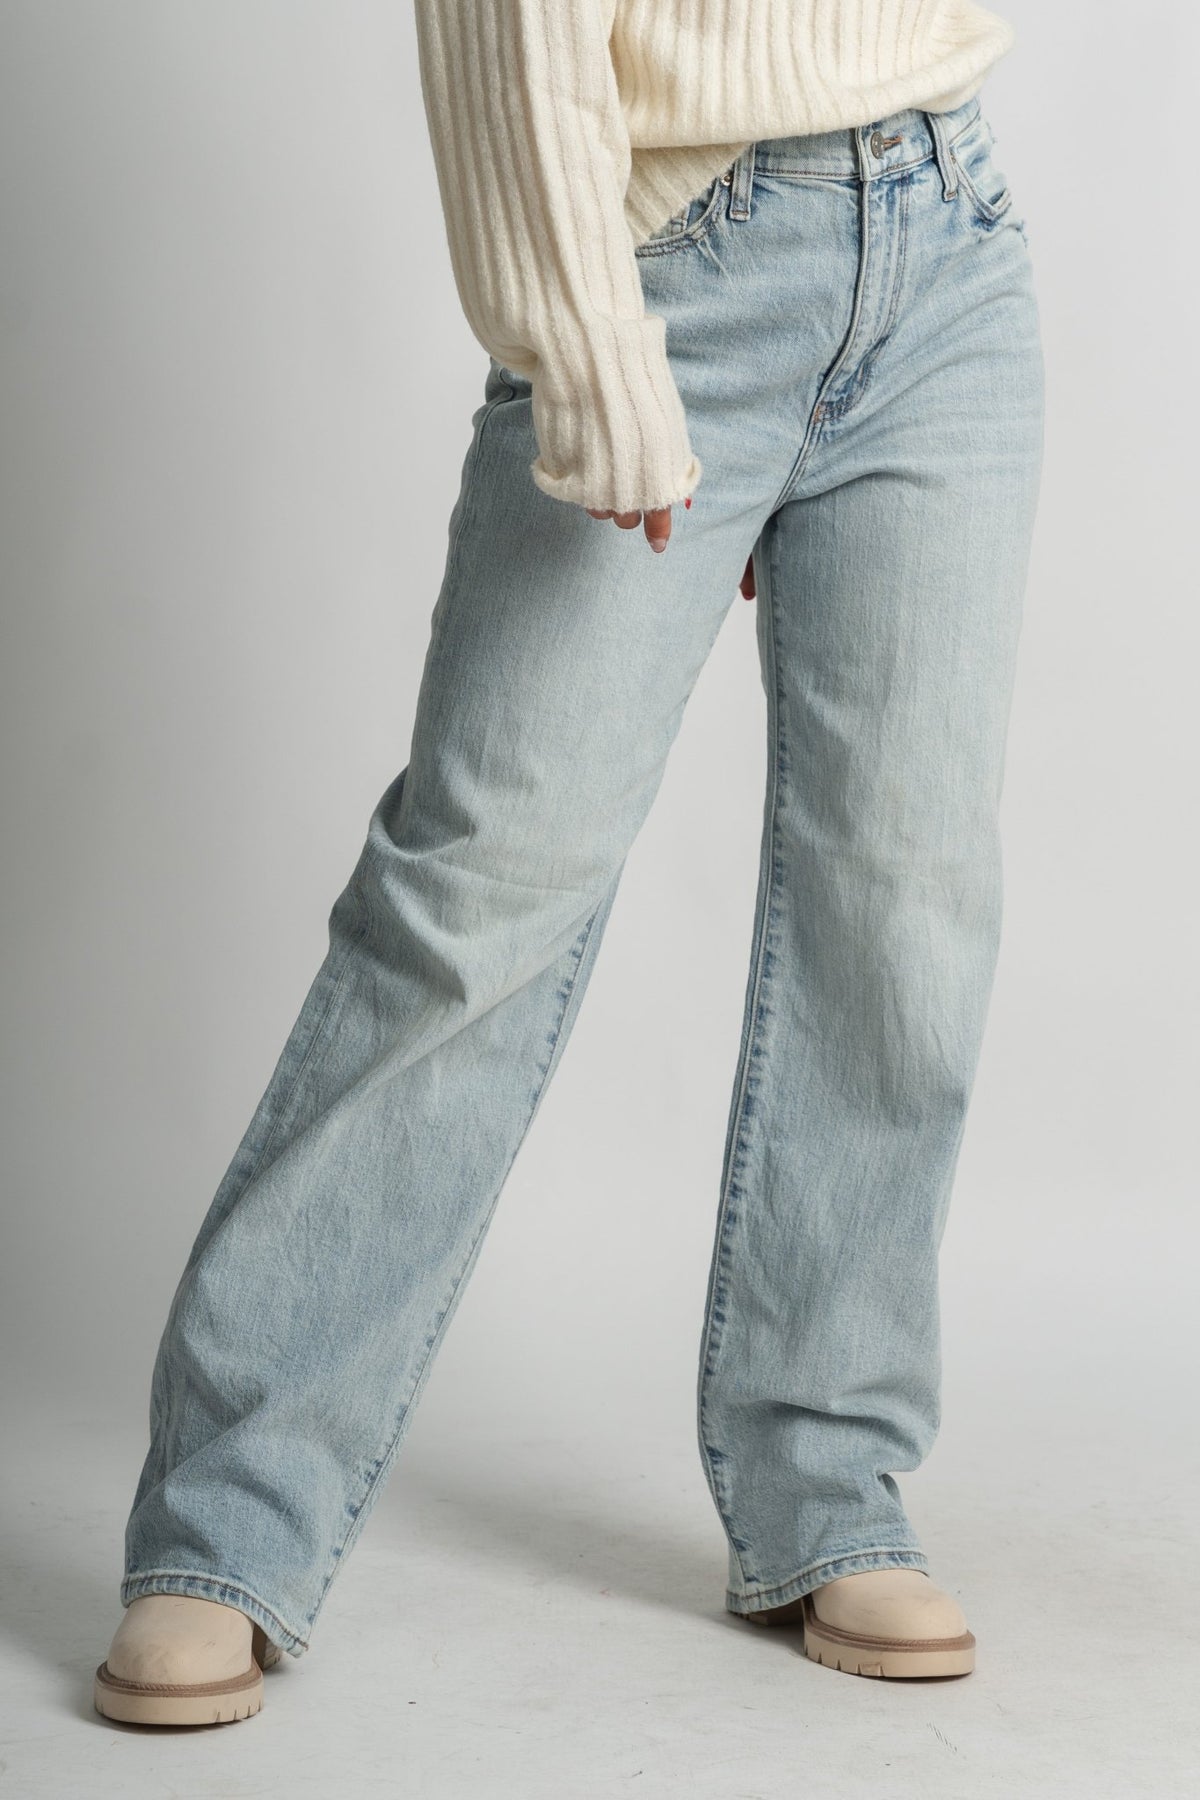 Daze off duty high rise 90's wide leg jeans sweet trip | Lush Fashion Lounge: boutique women's jeans, fashion jeans for women, affordable fashion jeans, cute boutique jeans